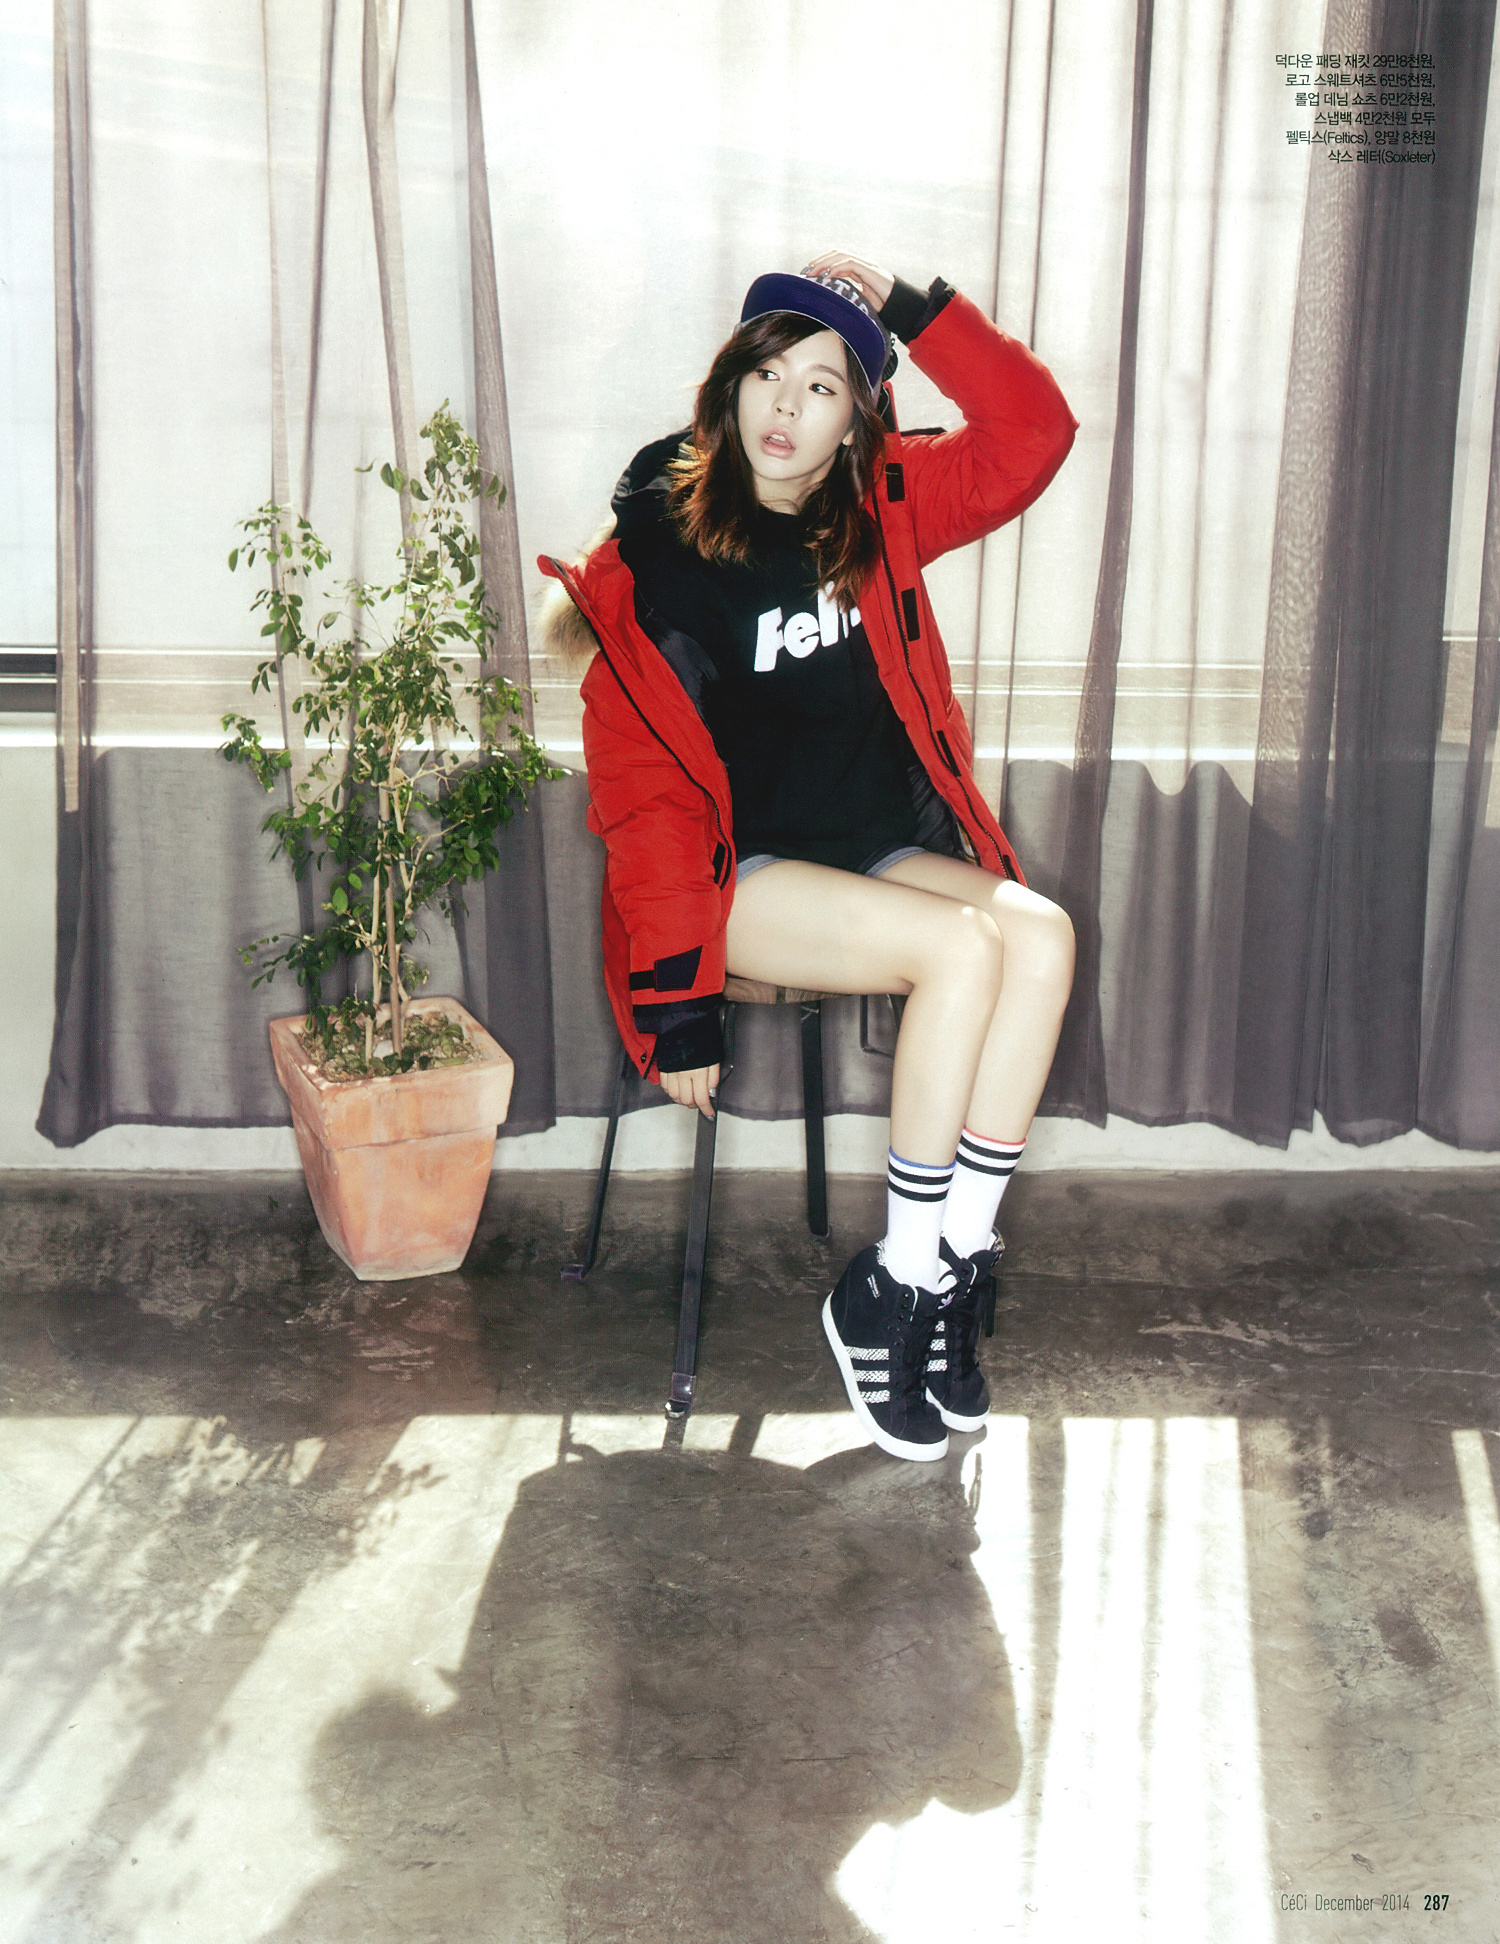 [PIC][19-11-2014]Sunny xuất hiện trên ấn phẩm tháng 12 của tạp chí "CECI" 15641236427_23598f7d98_o